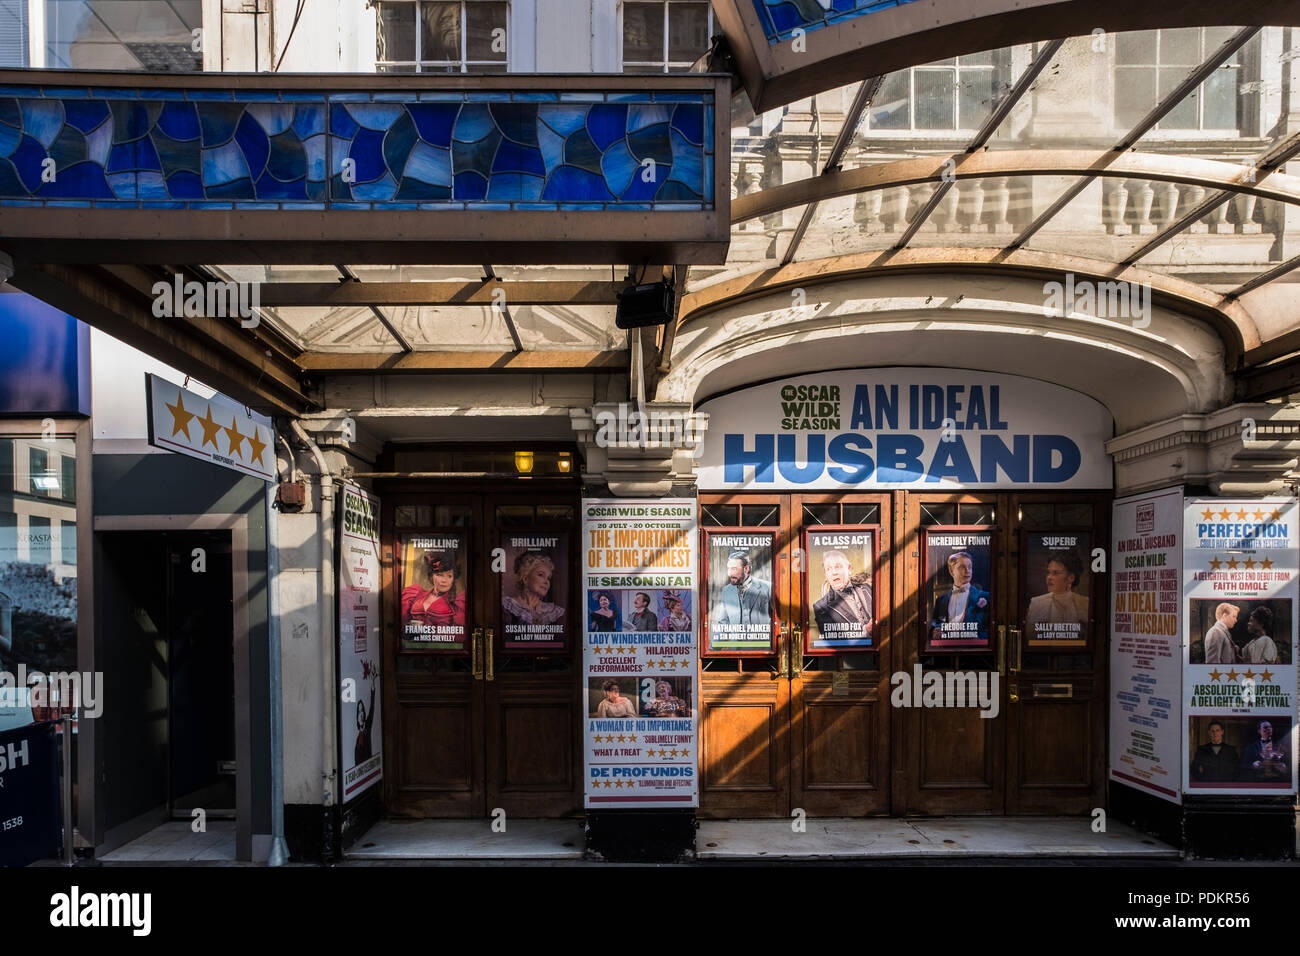 Ein idealer Gatte, Vaudeville Theatre, London, England, Großbritannien Stockfoto